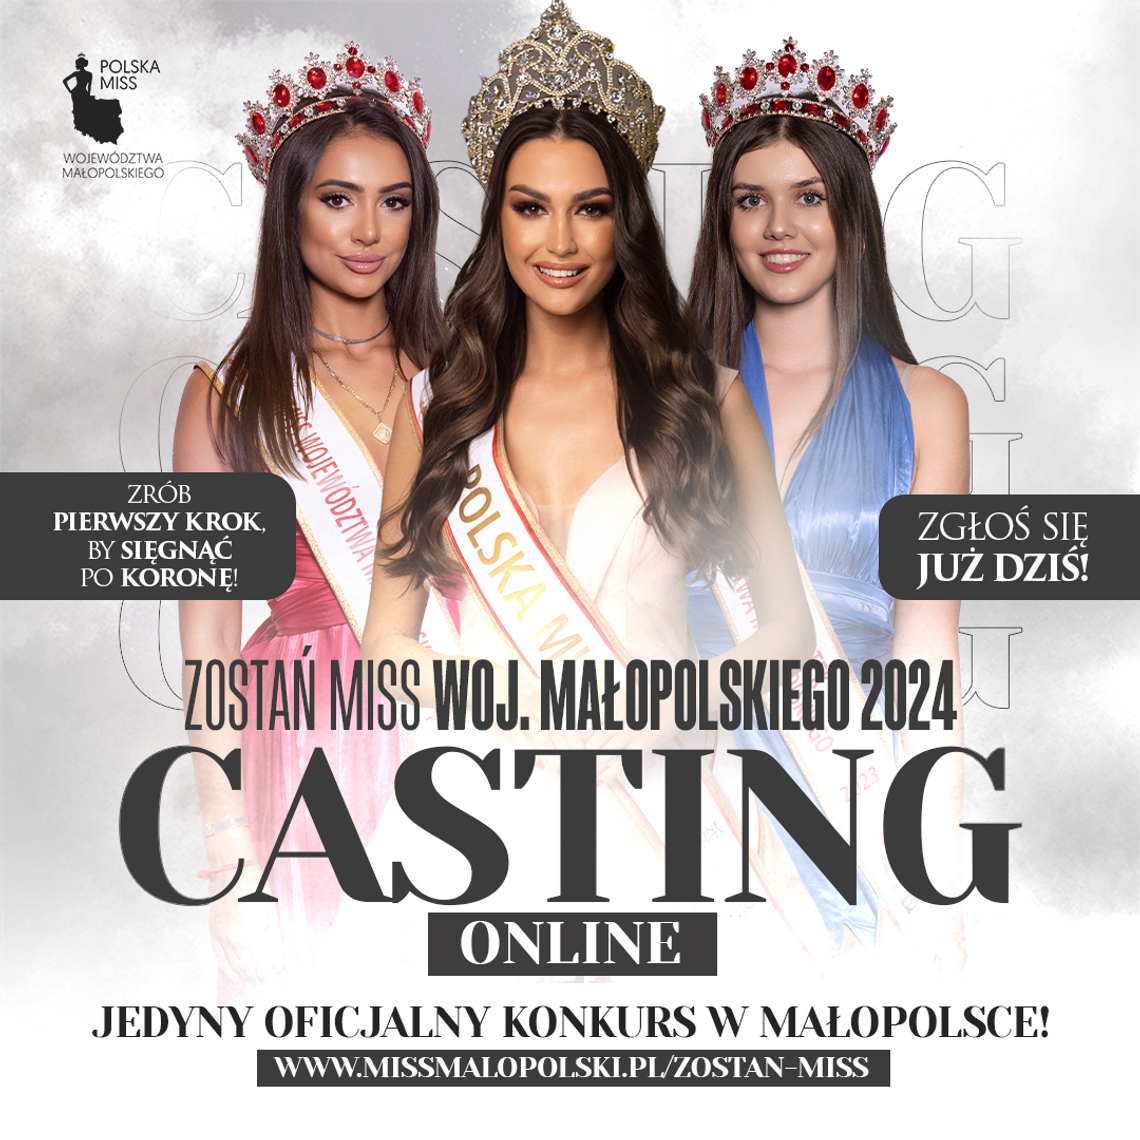 Trwa casting do konkursu Miss Województwa Małopolskiego 2024